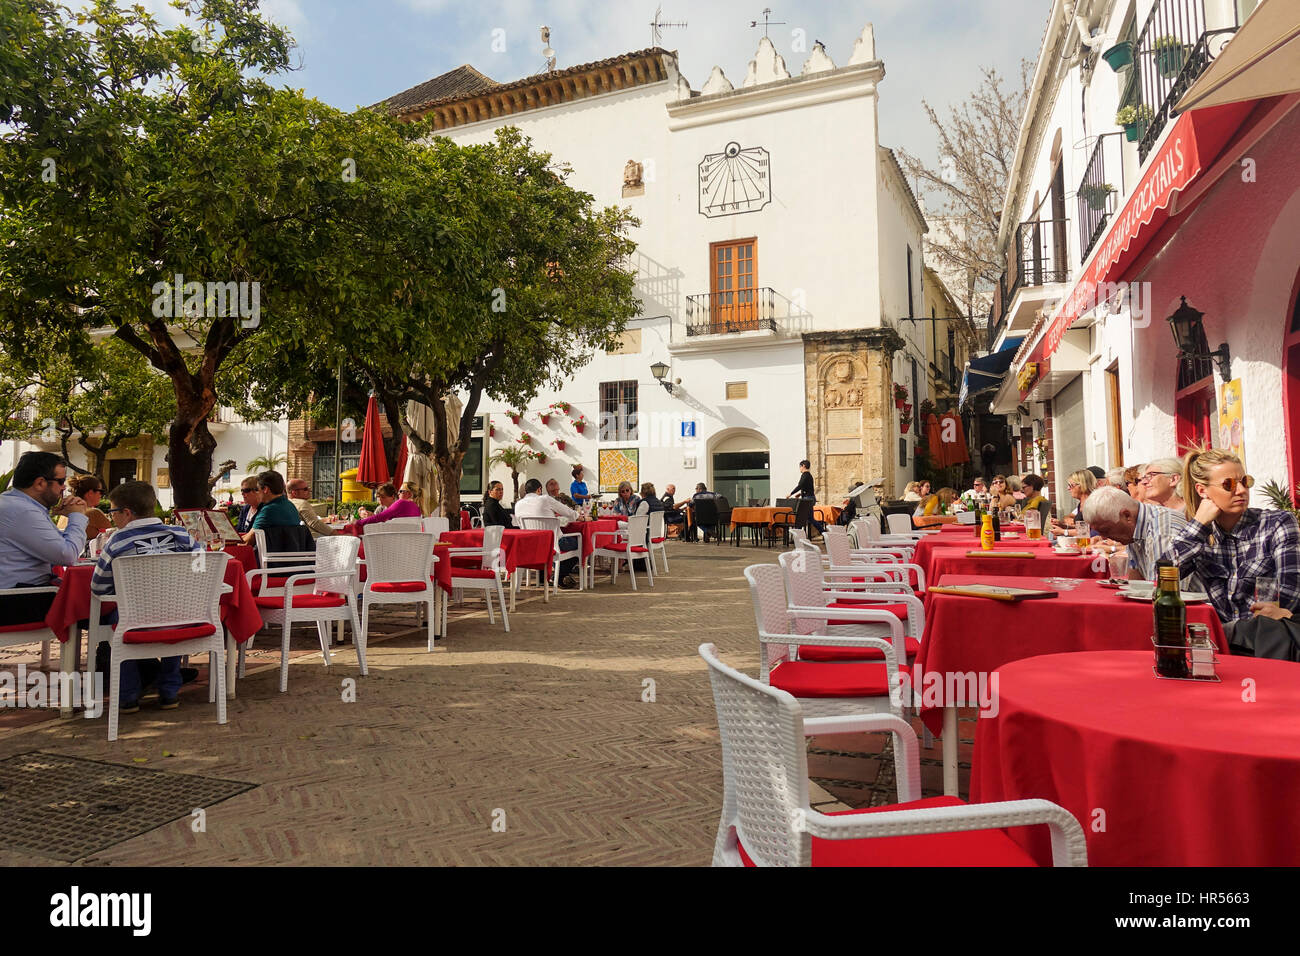 La Plaza de los Naranjos, carré orange, avec restaurant, salle à manger extérieure , ,Marbella, Andalousie, Espagne Banque D'Images